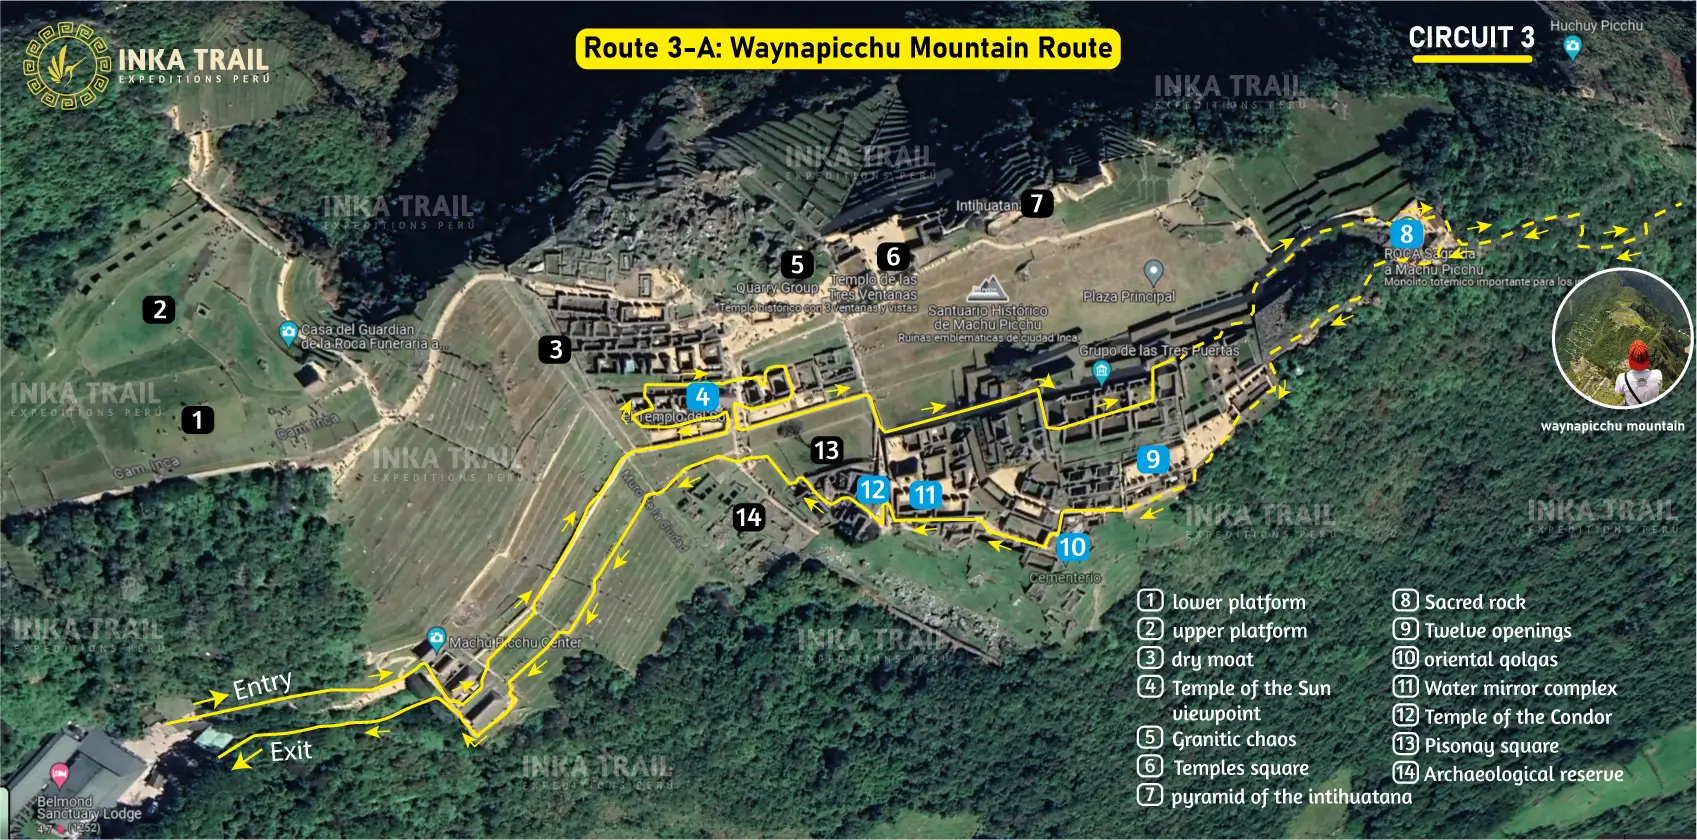 Machu Picchu circuit Route 3-A